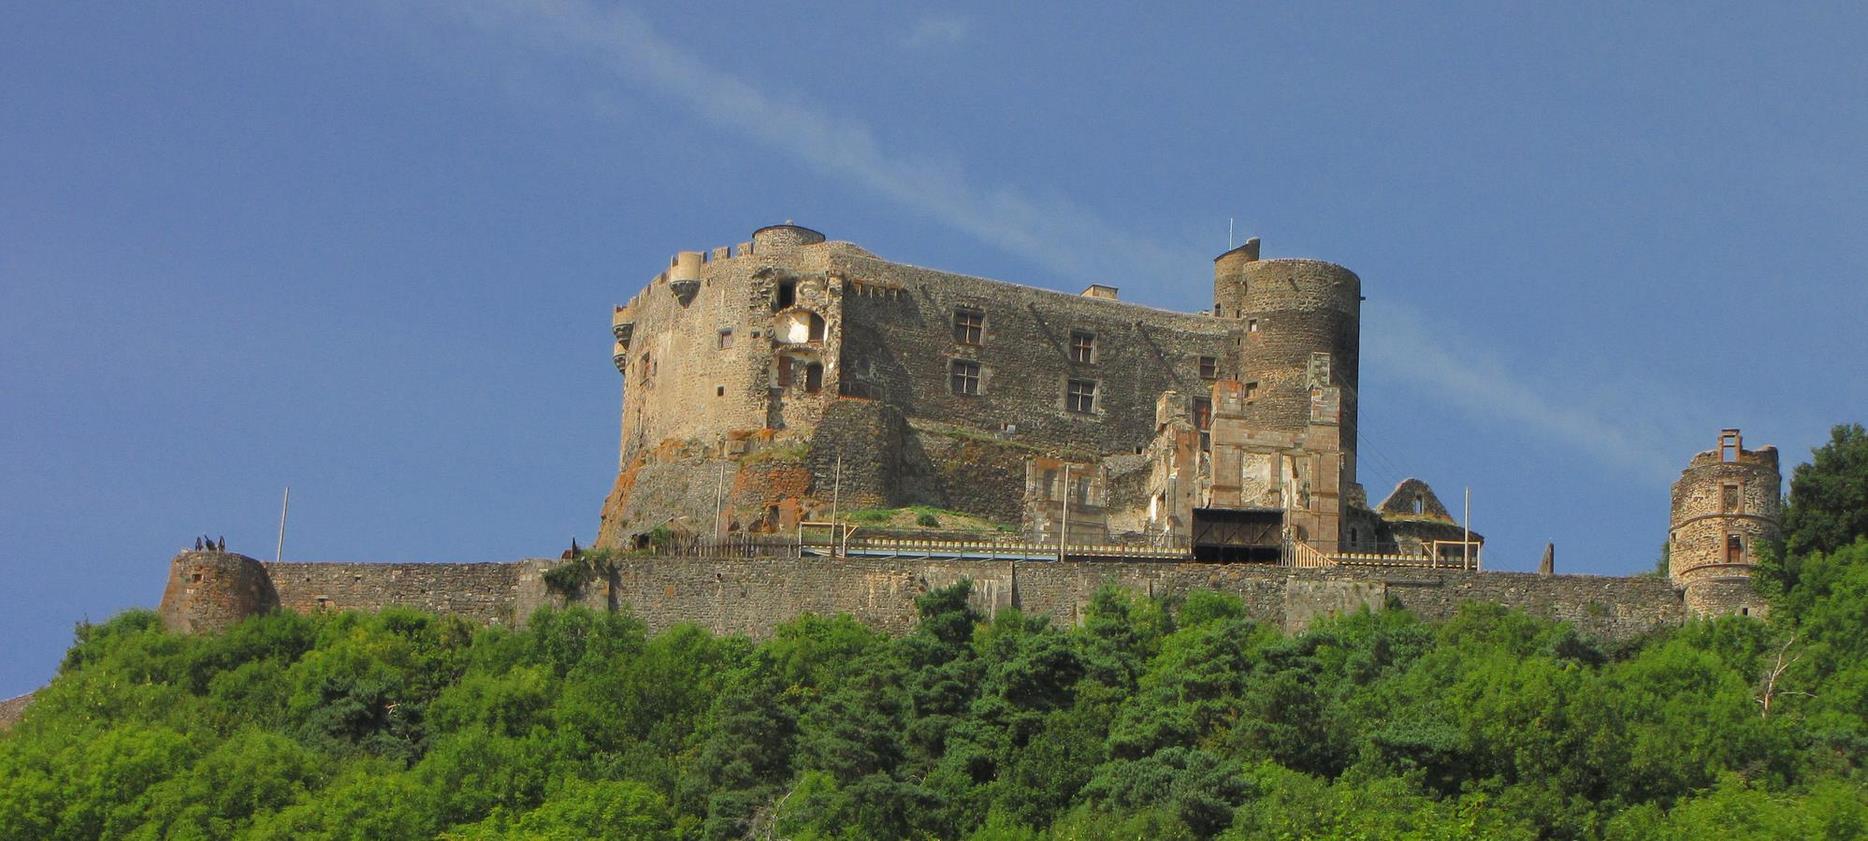 Super Besse - Chateau de Murol, fortified castle in Auvergne